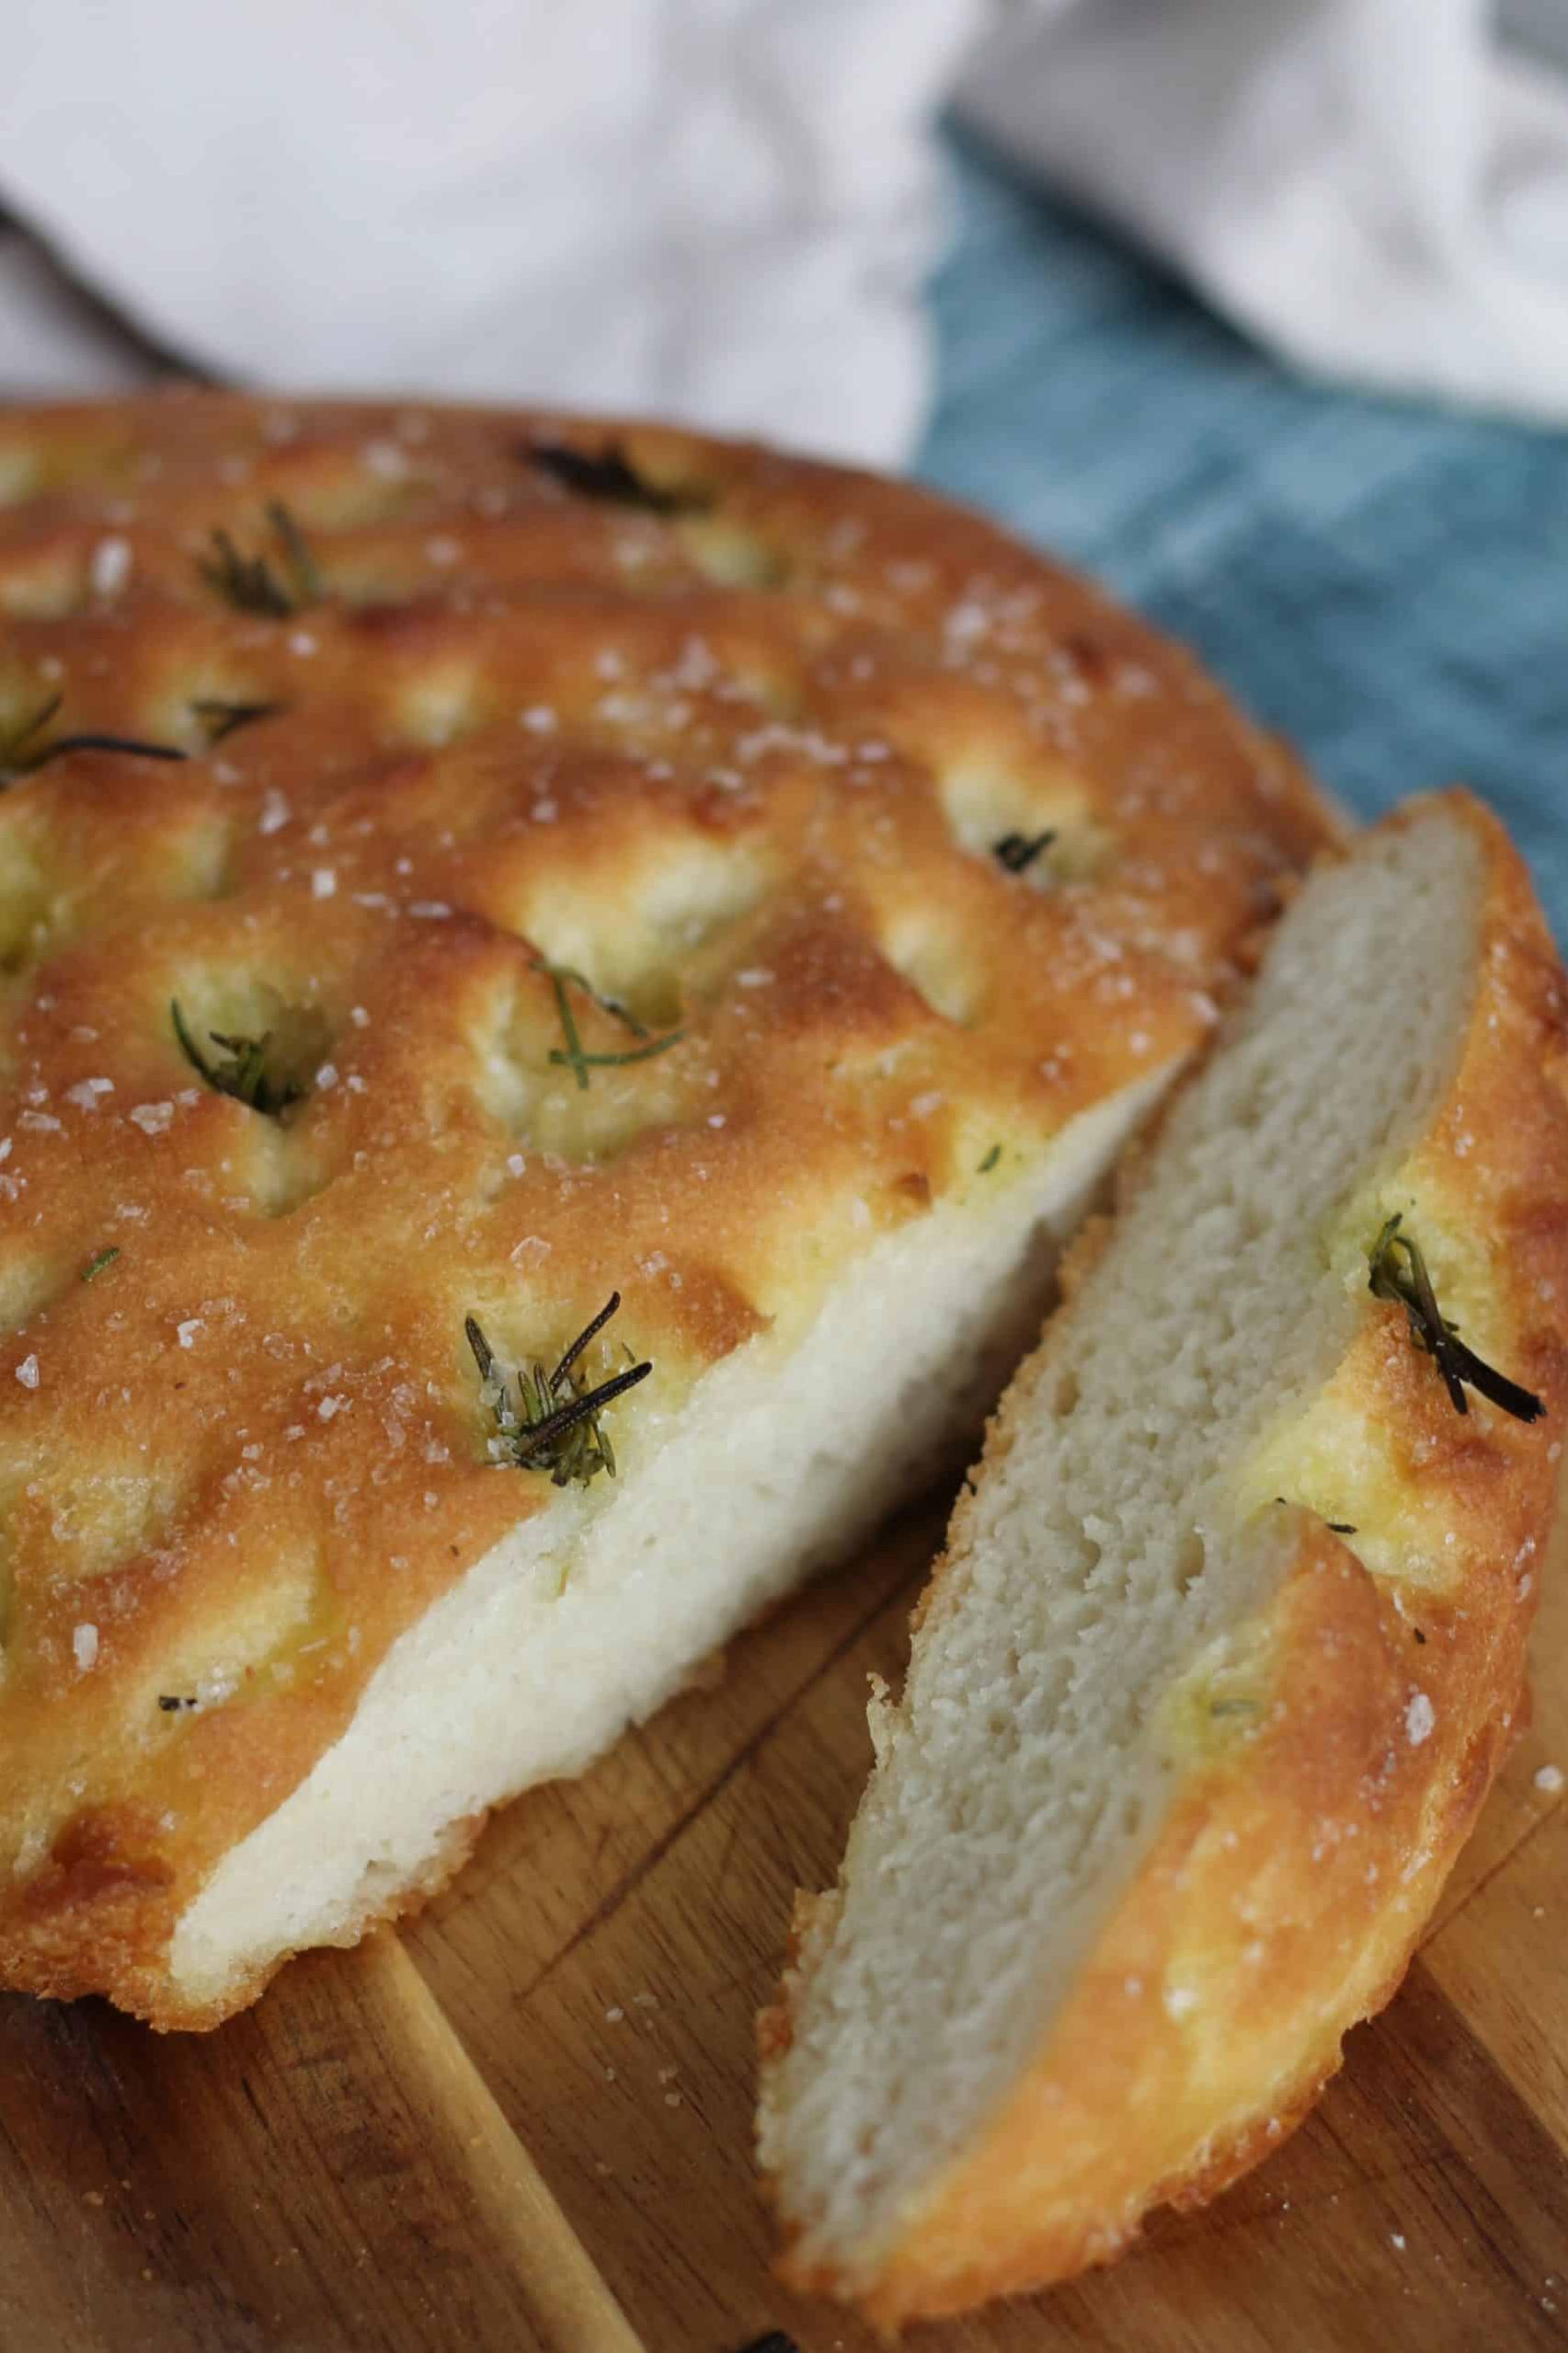  No gluten, no problem: A delicious bread alternative for those who avoid gluten